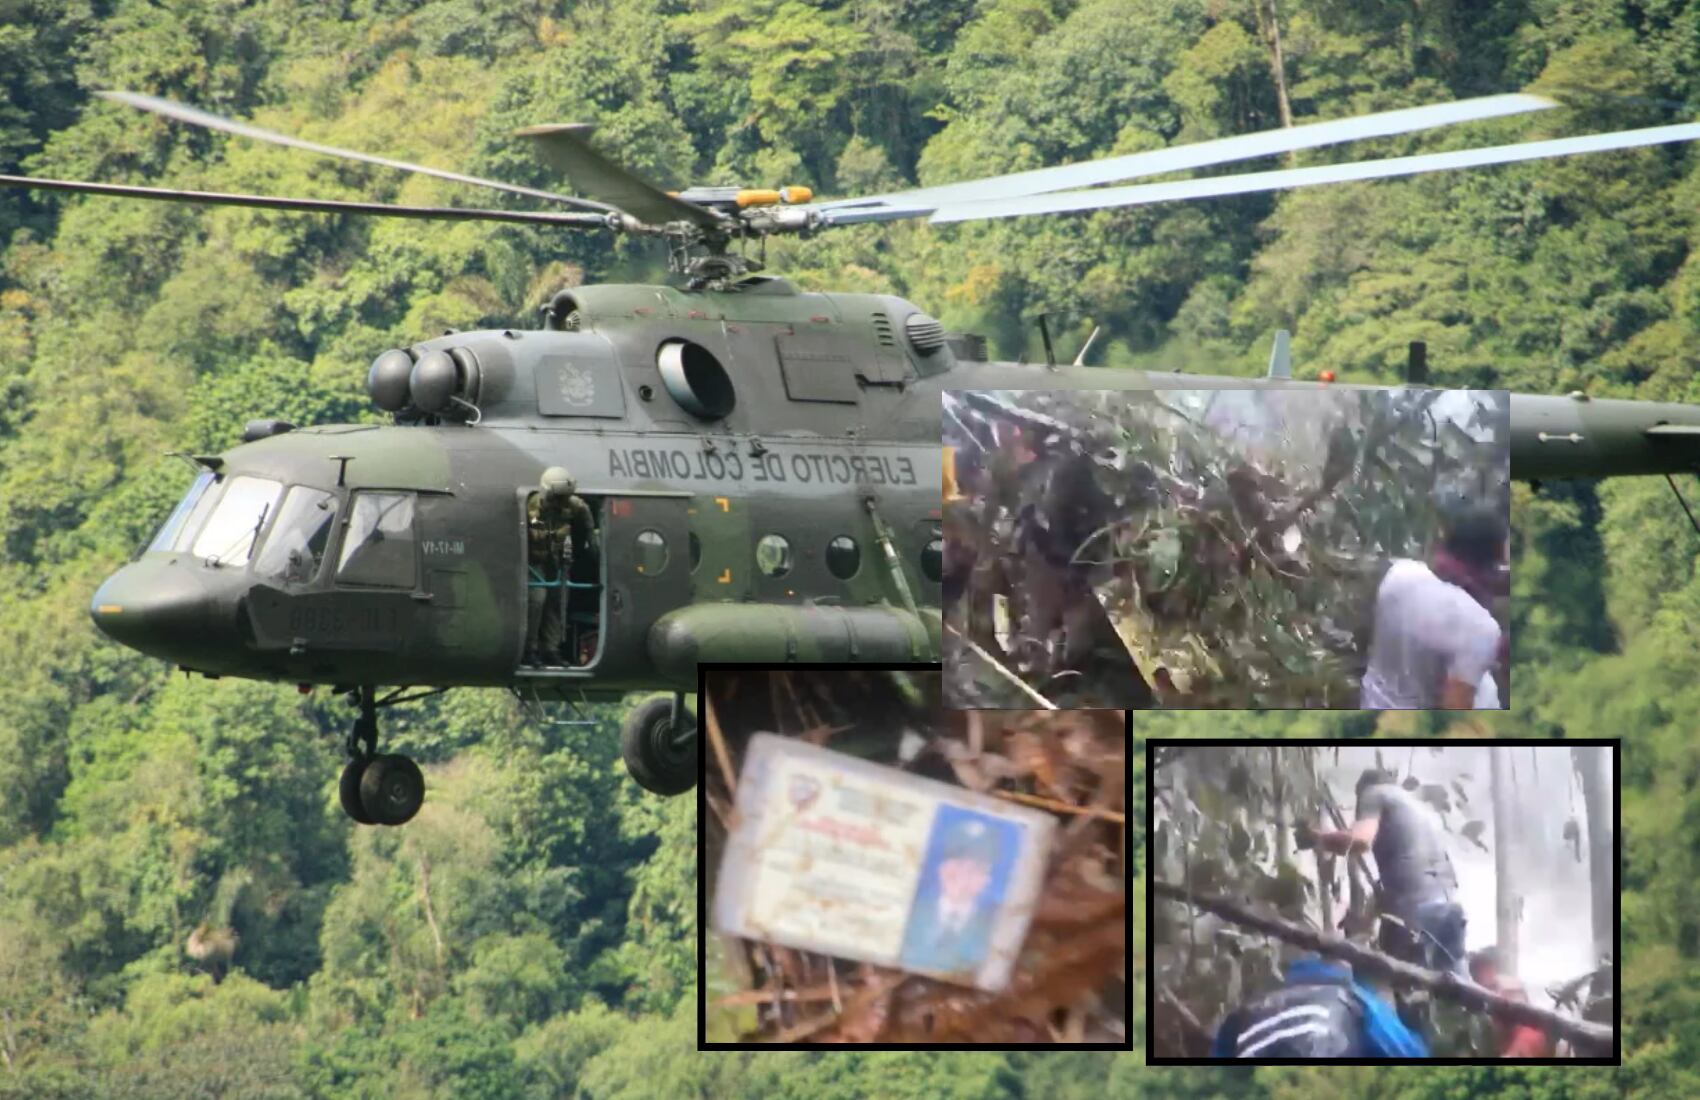 En el siniestro murieron los nueve militares que iban a bordo del helicóptero - crédito Fuerzas Militares/ Redes sociales